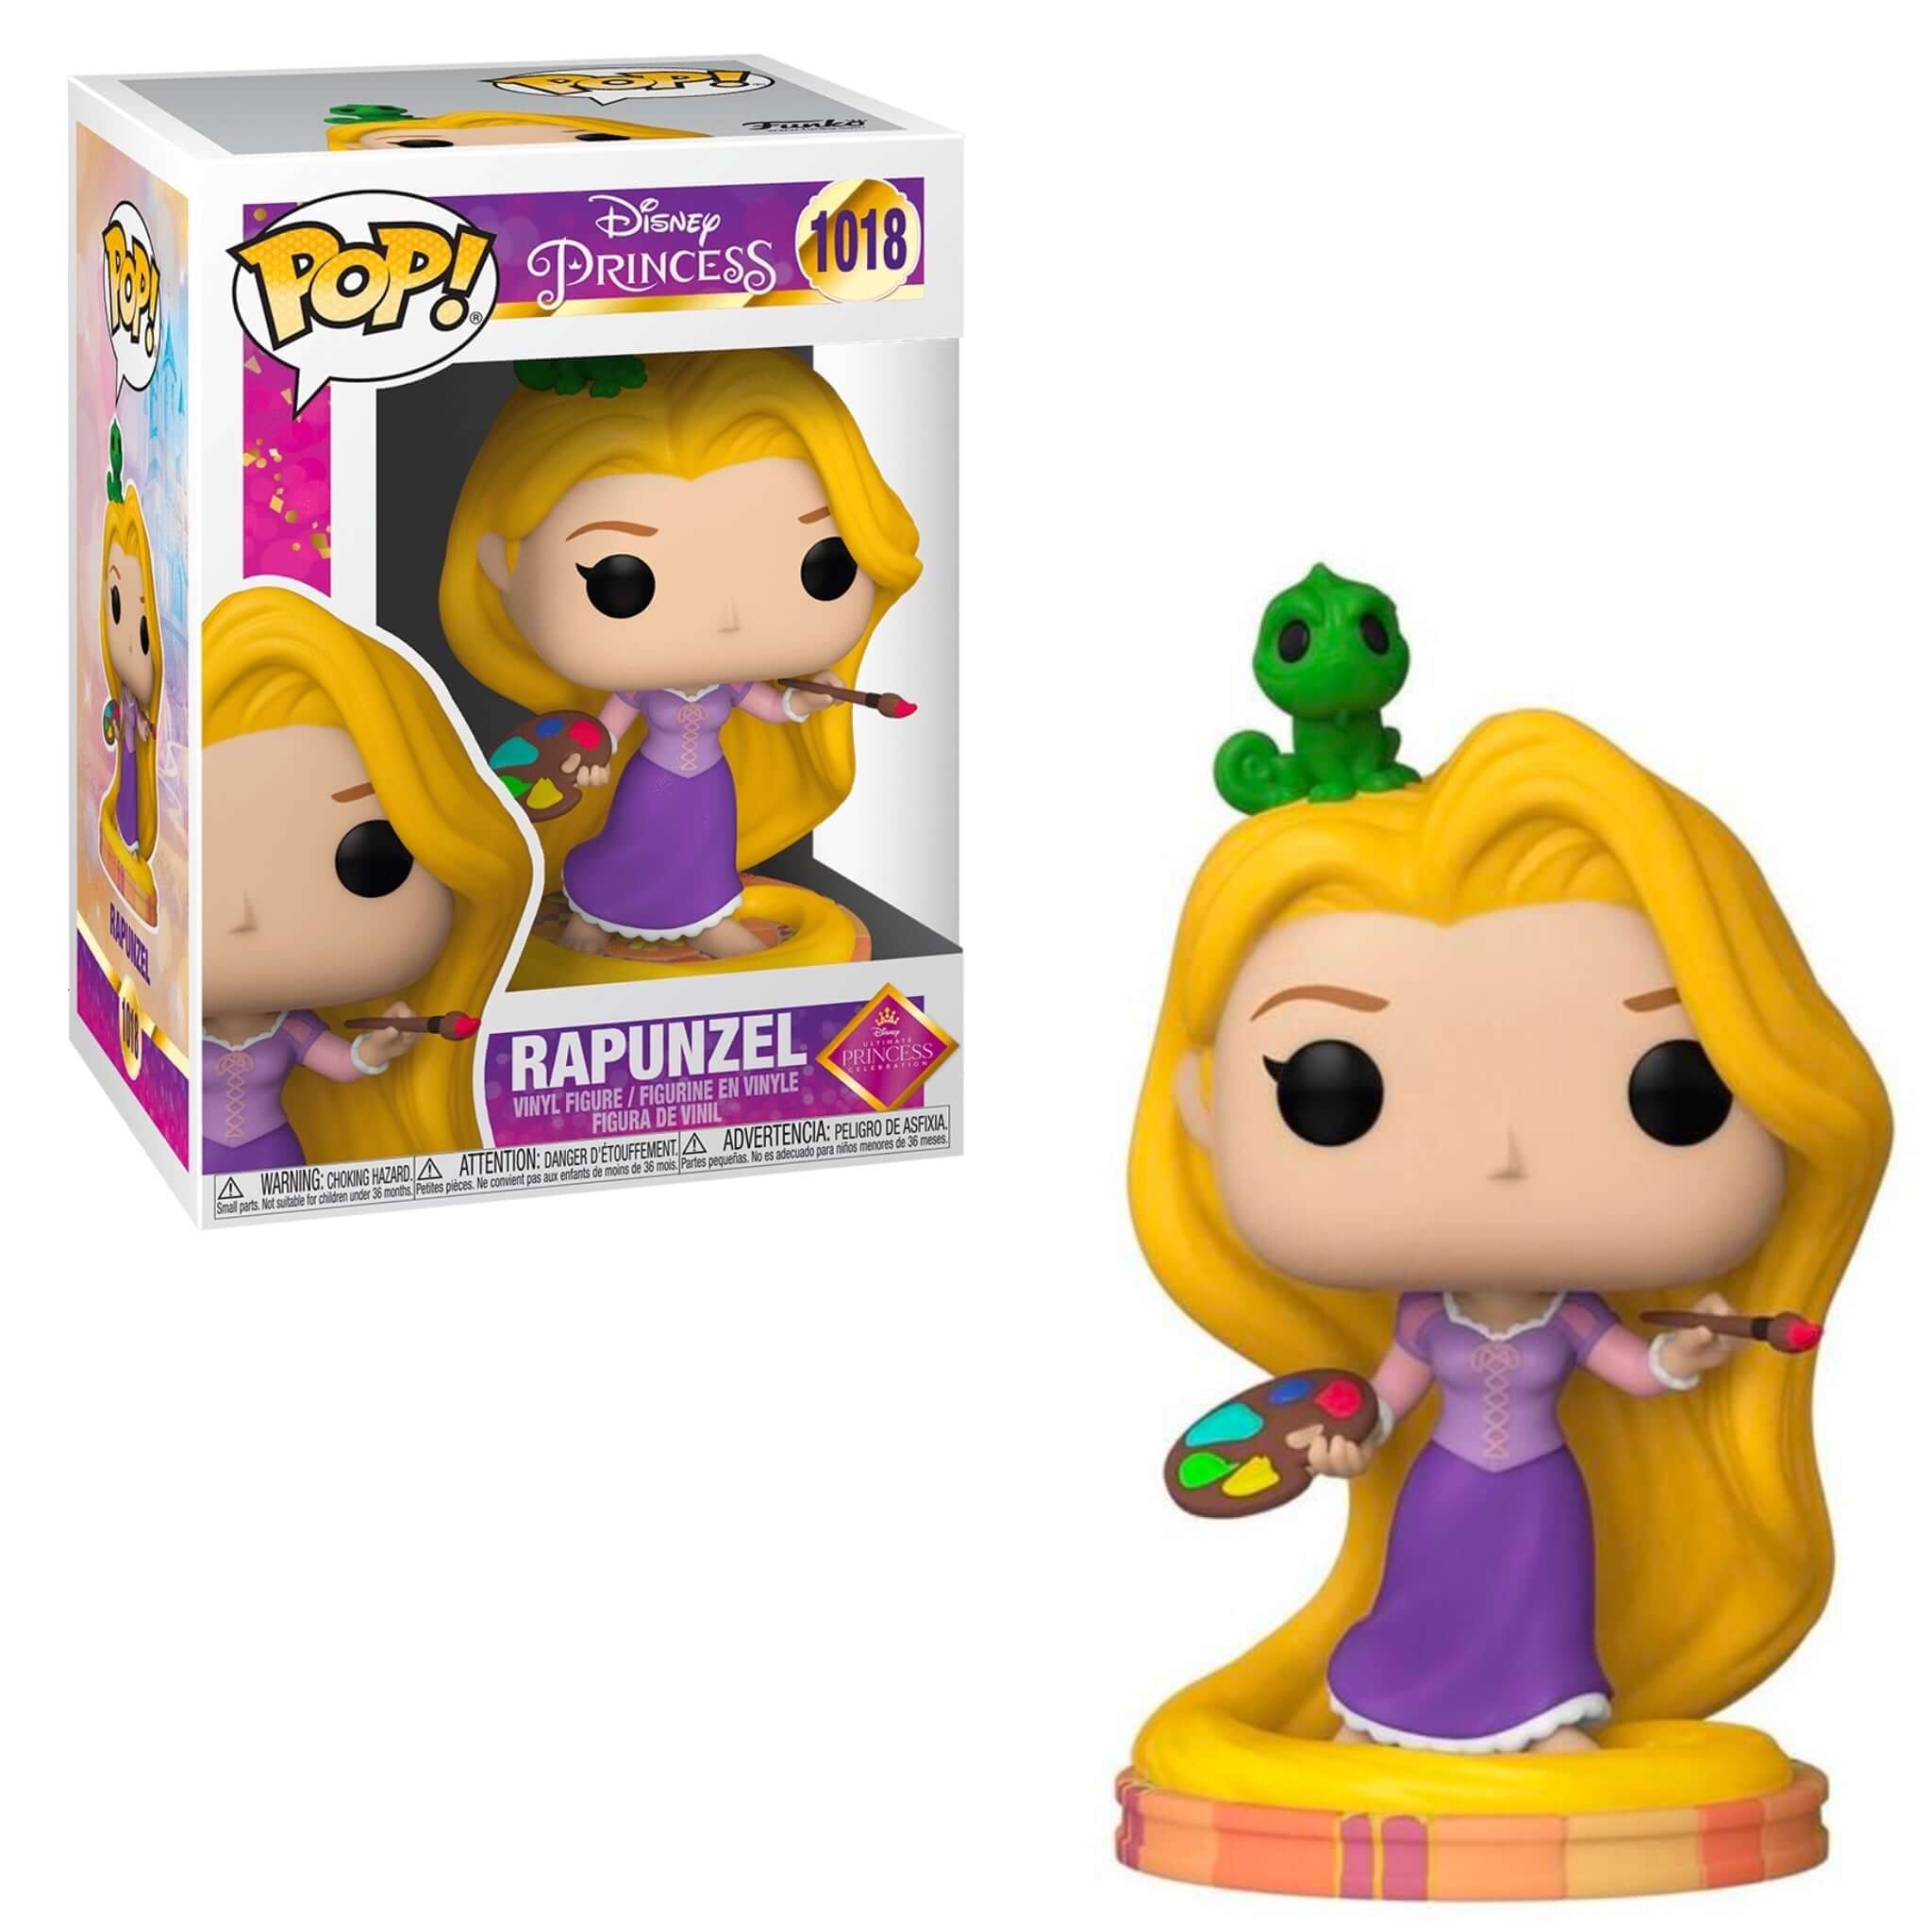 Rapunzel Funko Pop!-Jingle Truck Toys